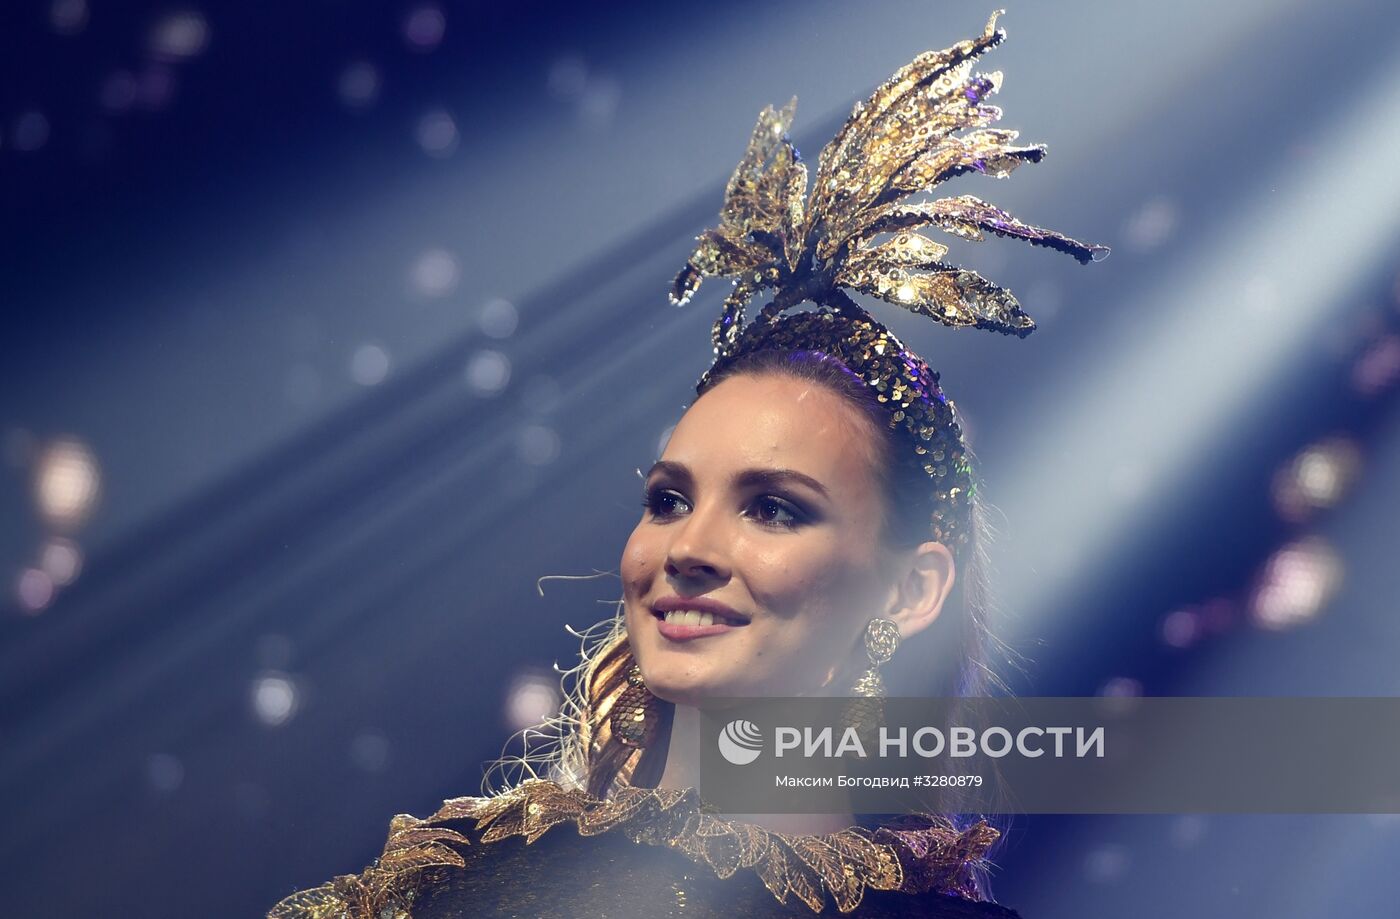 Конкурс красоты "Мисс Татарстан-2018"